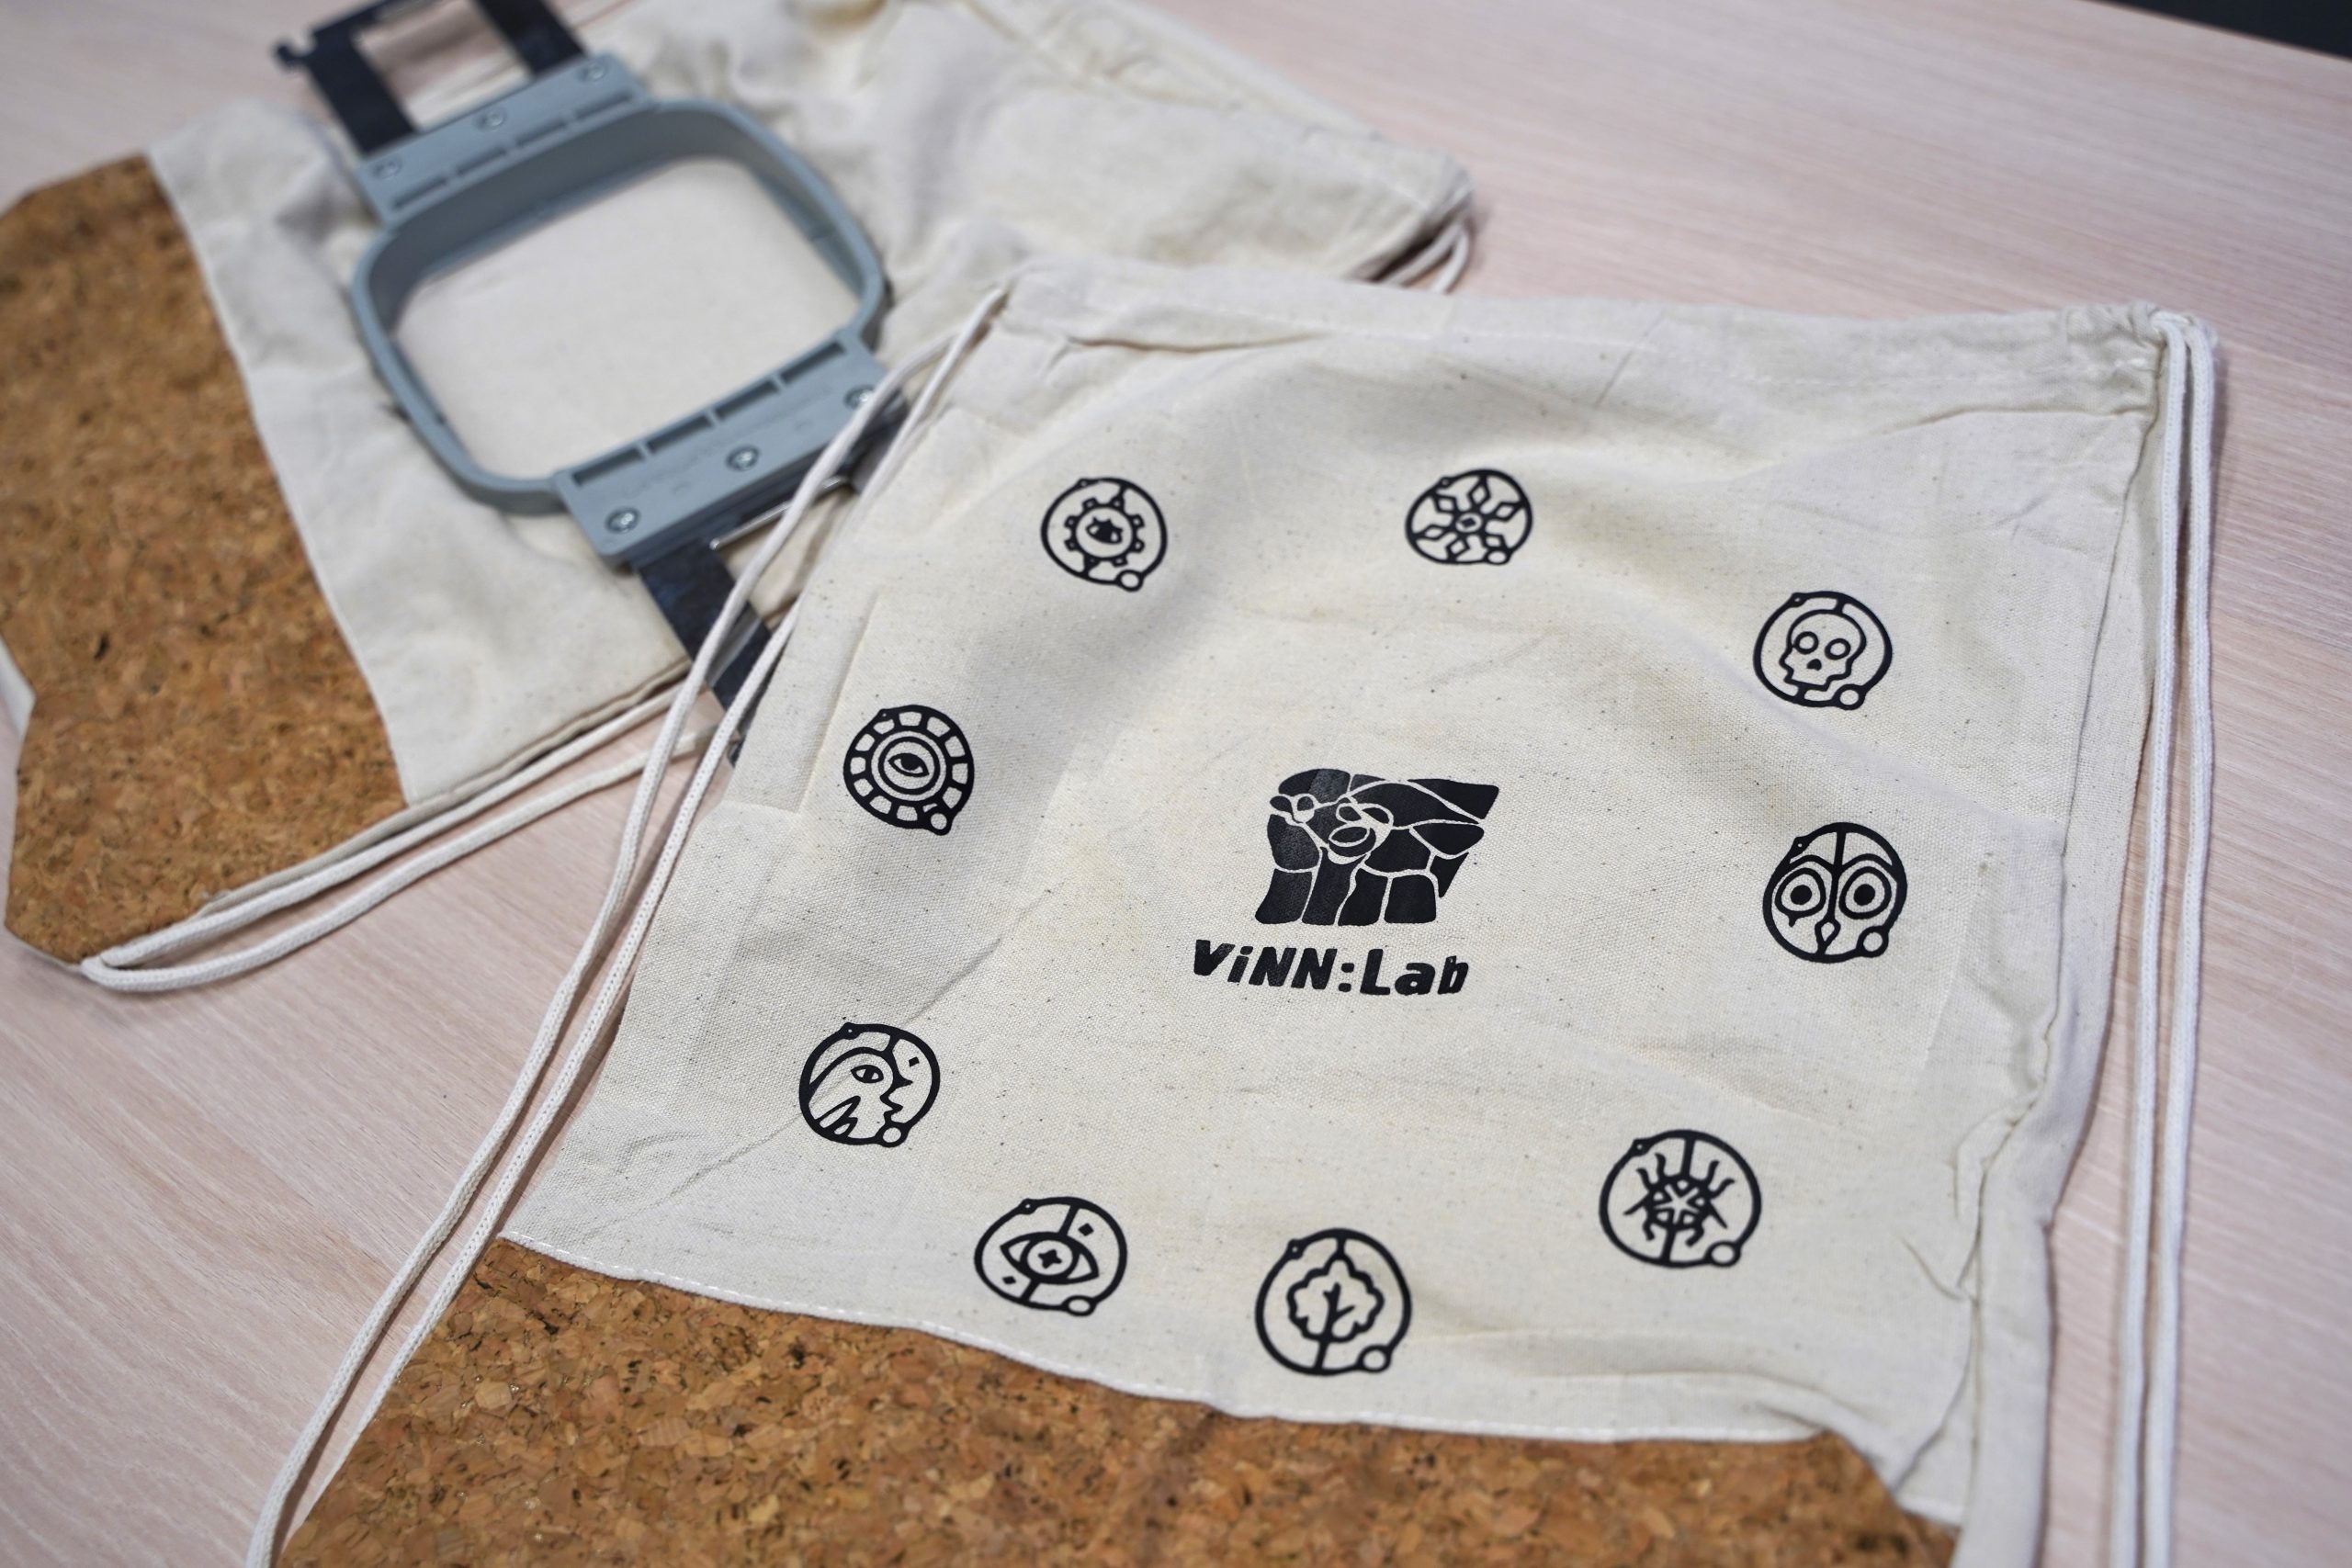 "Rucksack personalisieren - Einführung in die Textilverarbeitung" – Workshop vor Ort im ViNN:Lab